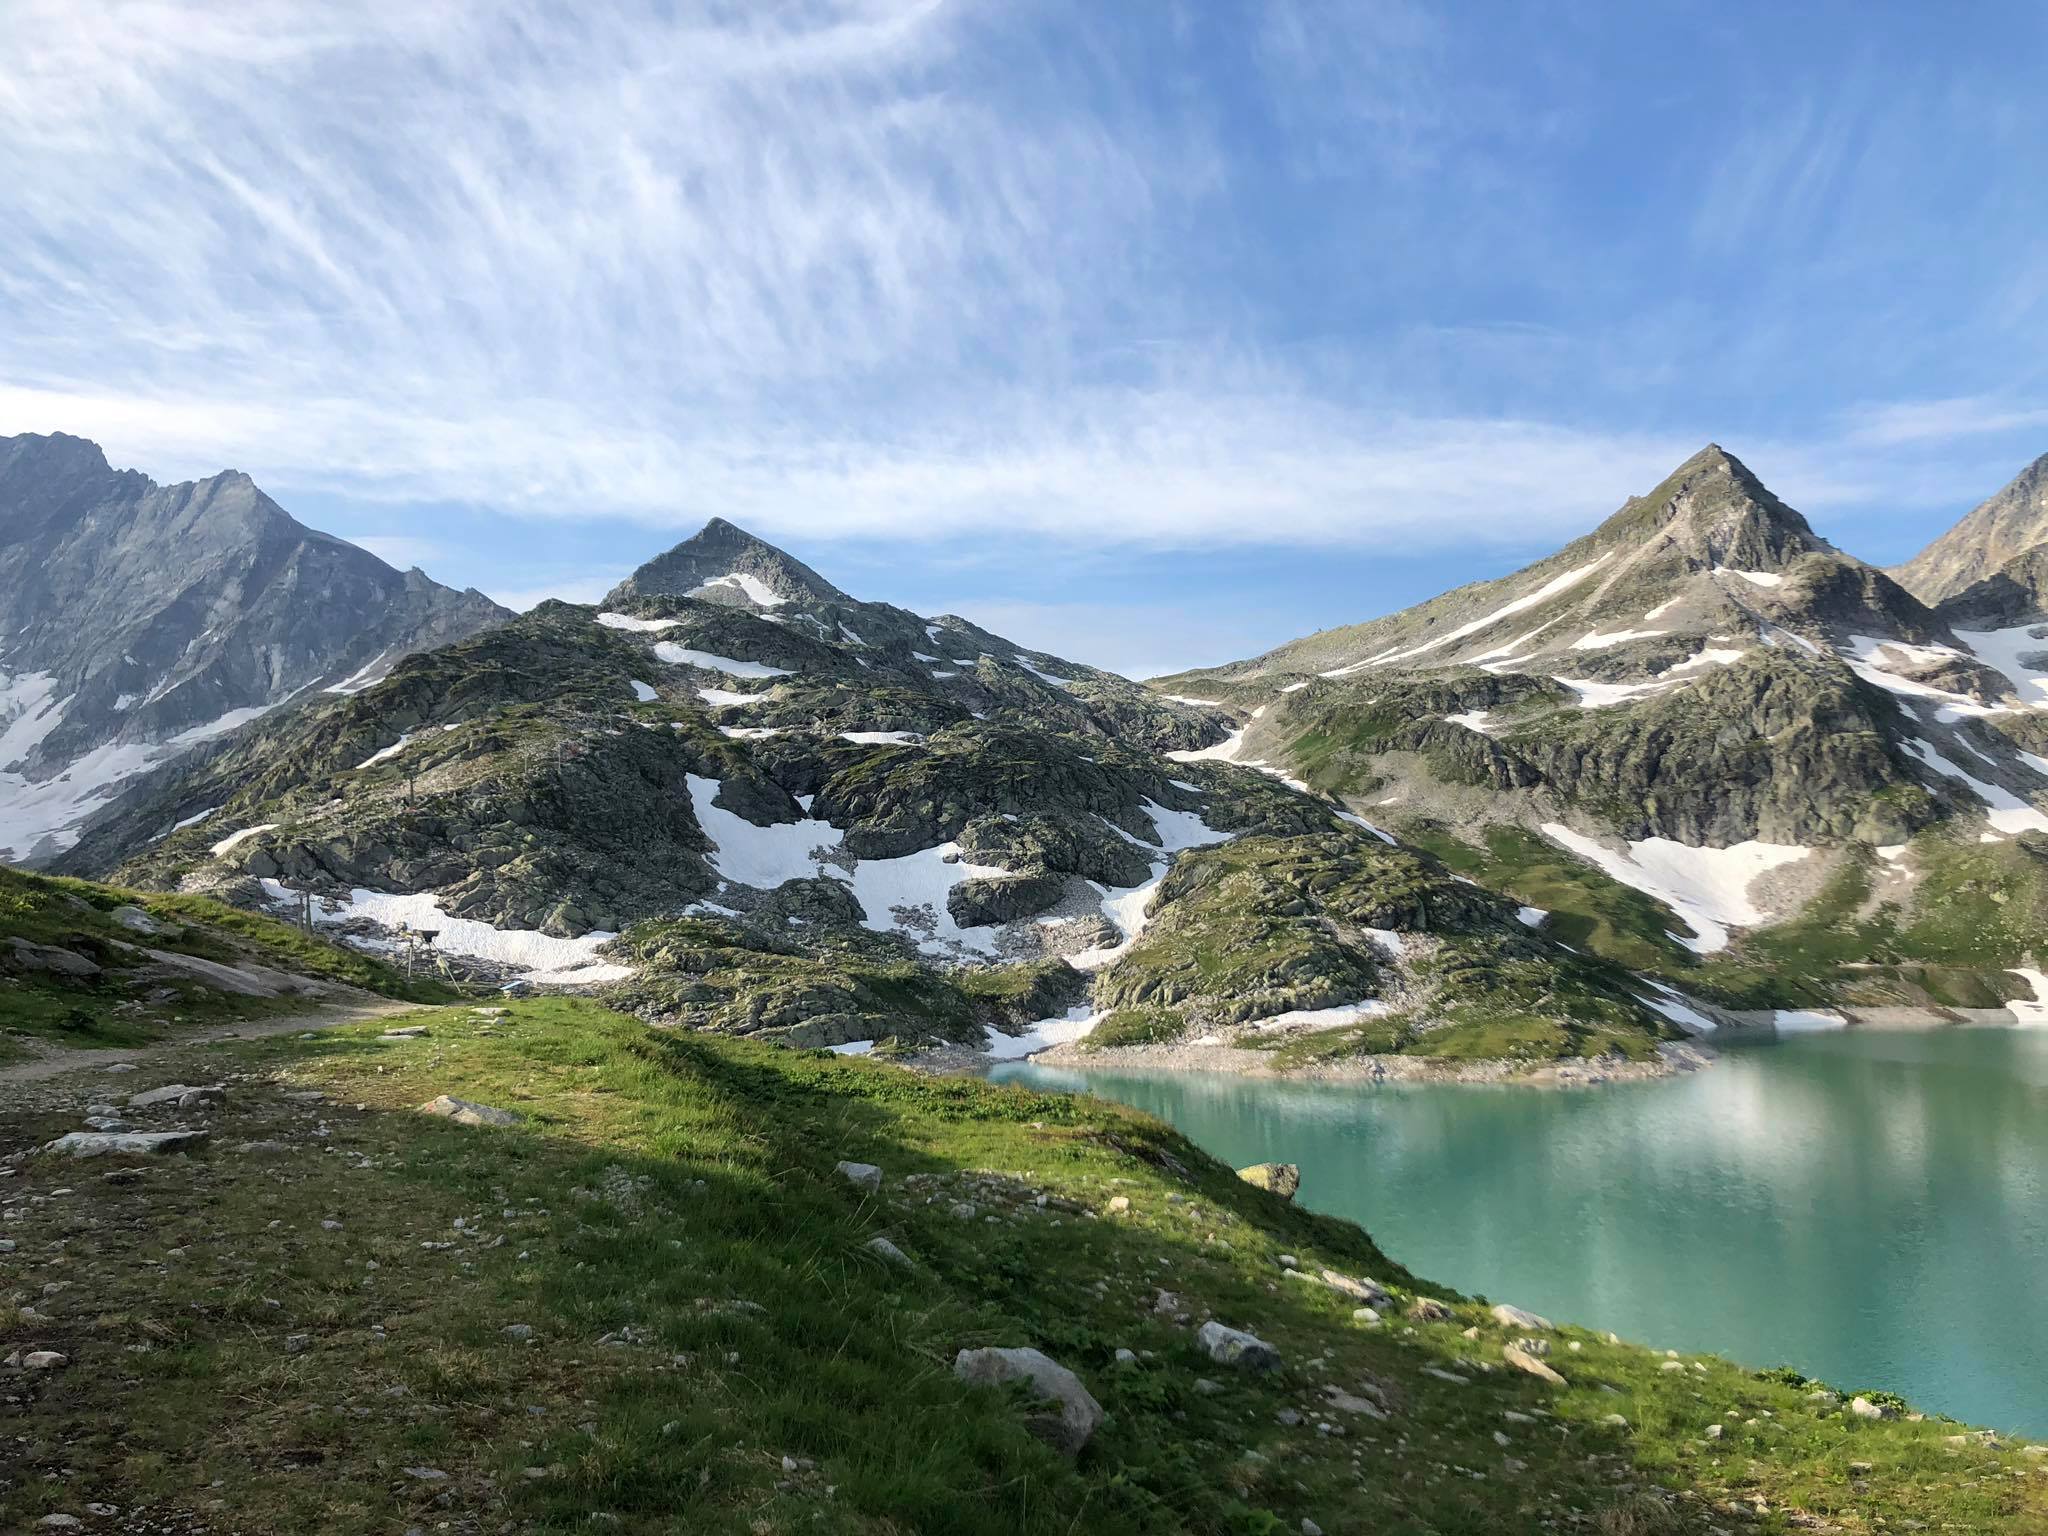 GGUT35 – Weissee Gletscherwelt Trail